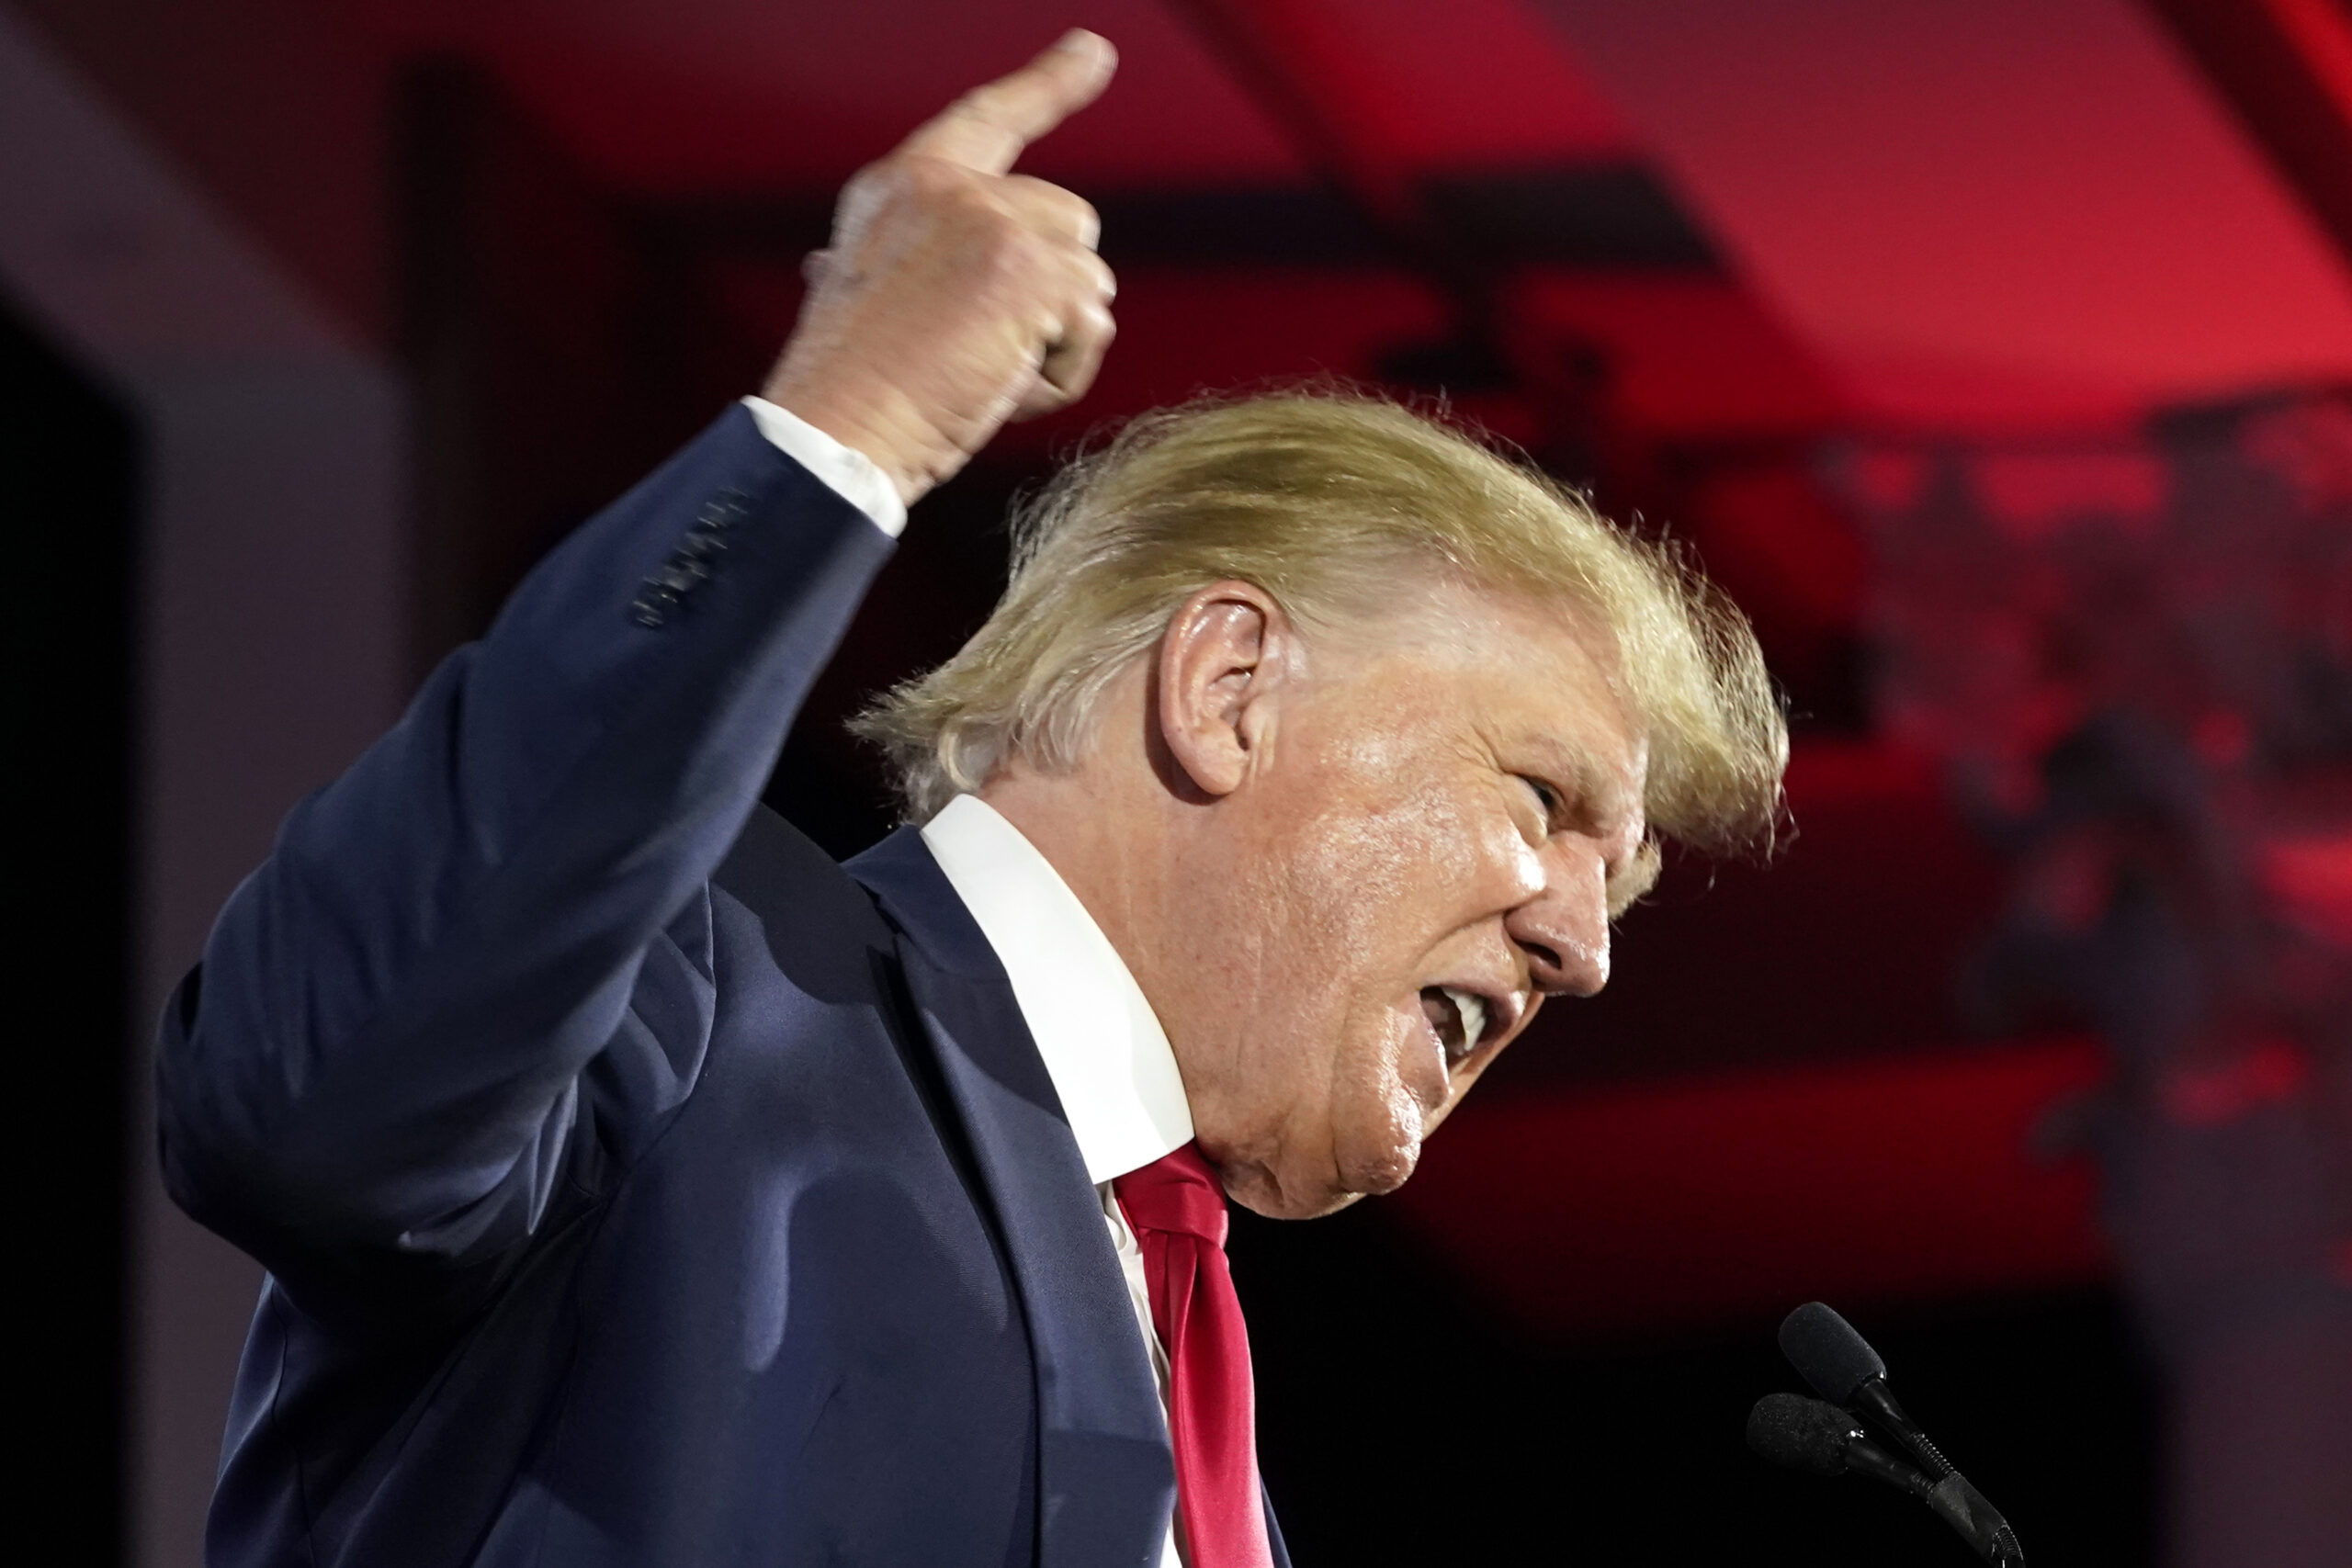 Donald Trump, ehemaliger Präsident der USA, spricht auf einer Veranstaltung vor seinen Anhängern (Symbolbild).